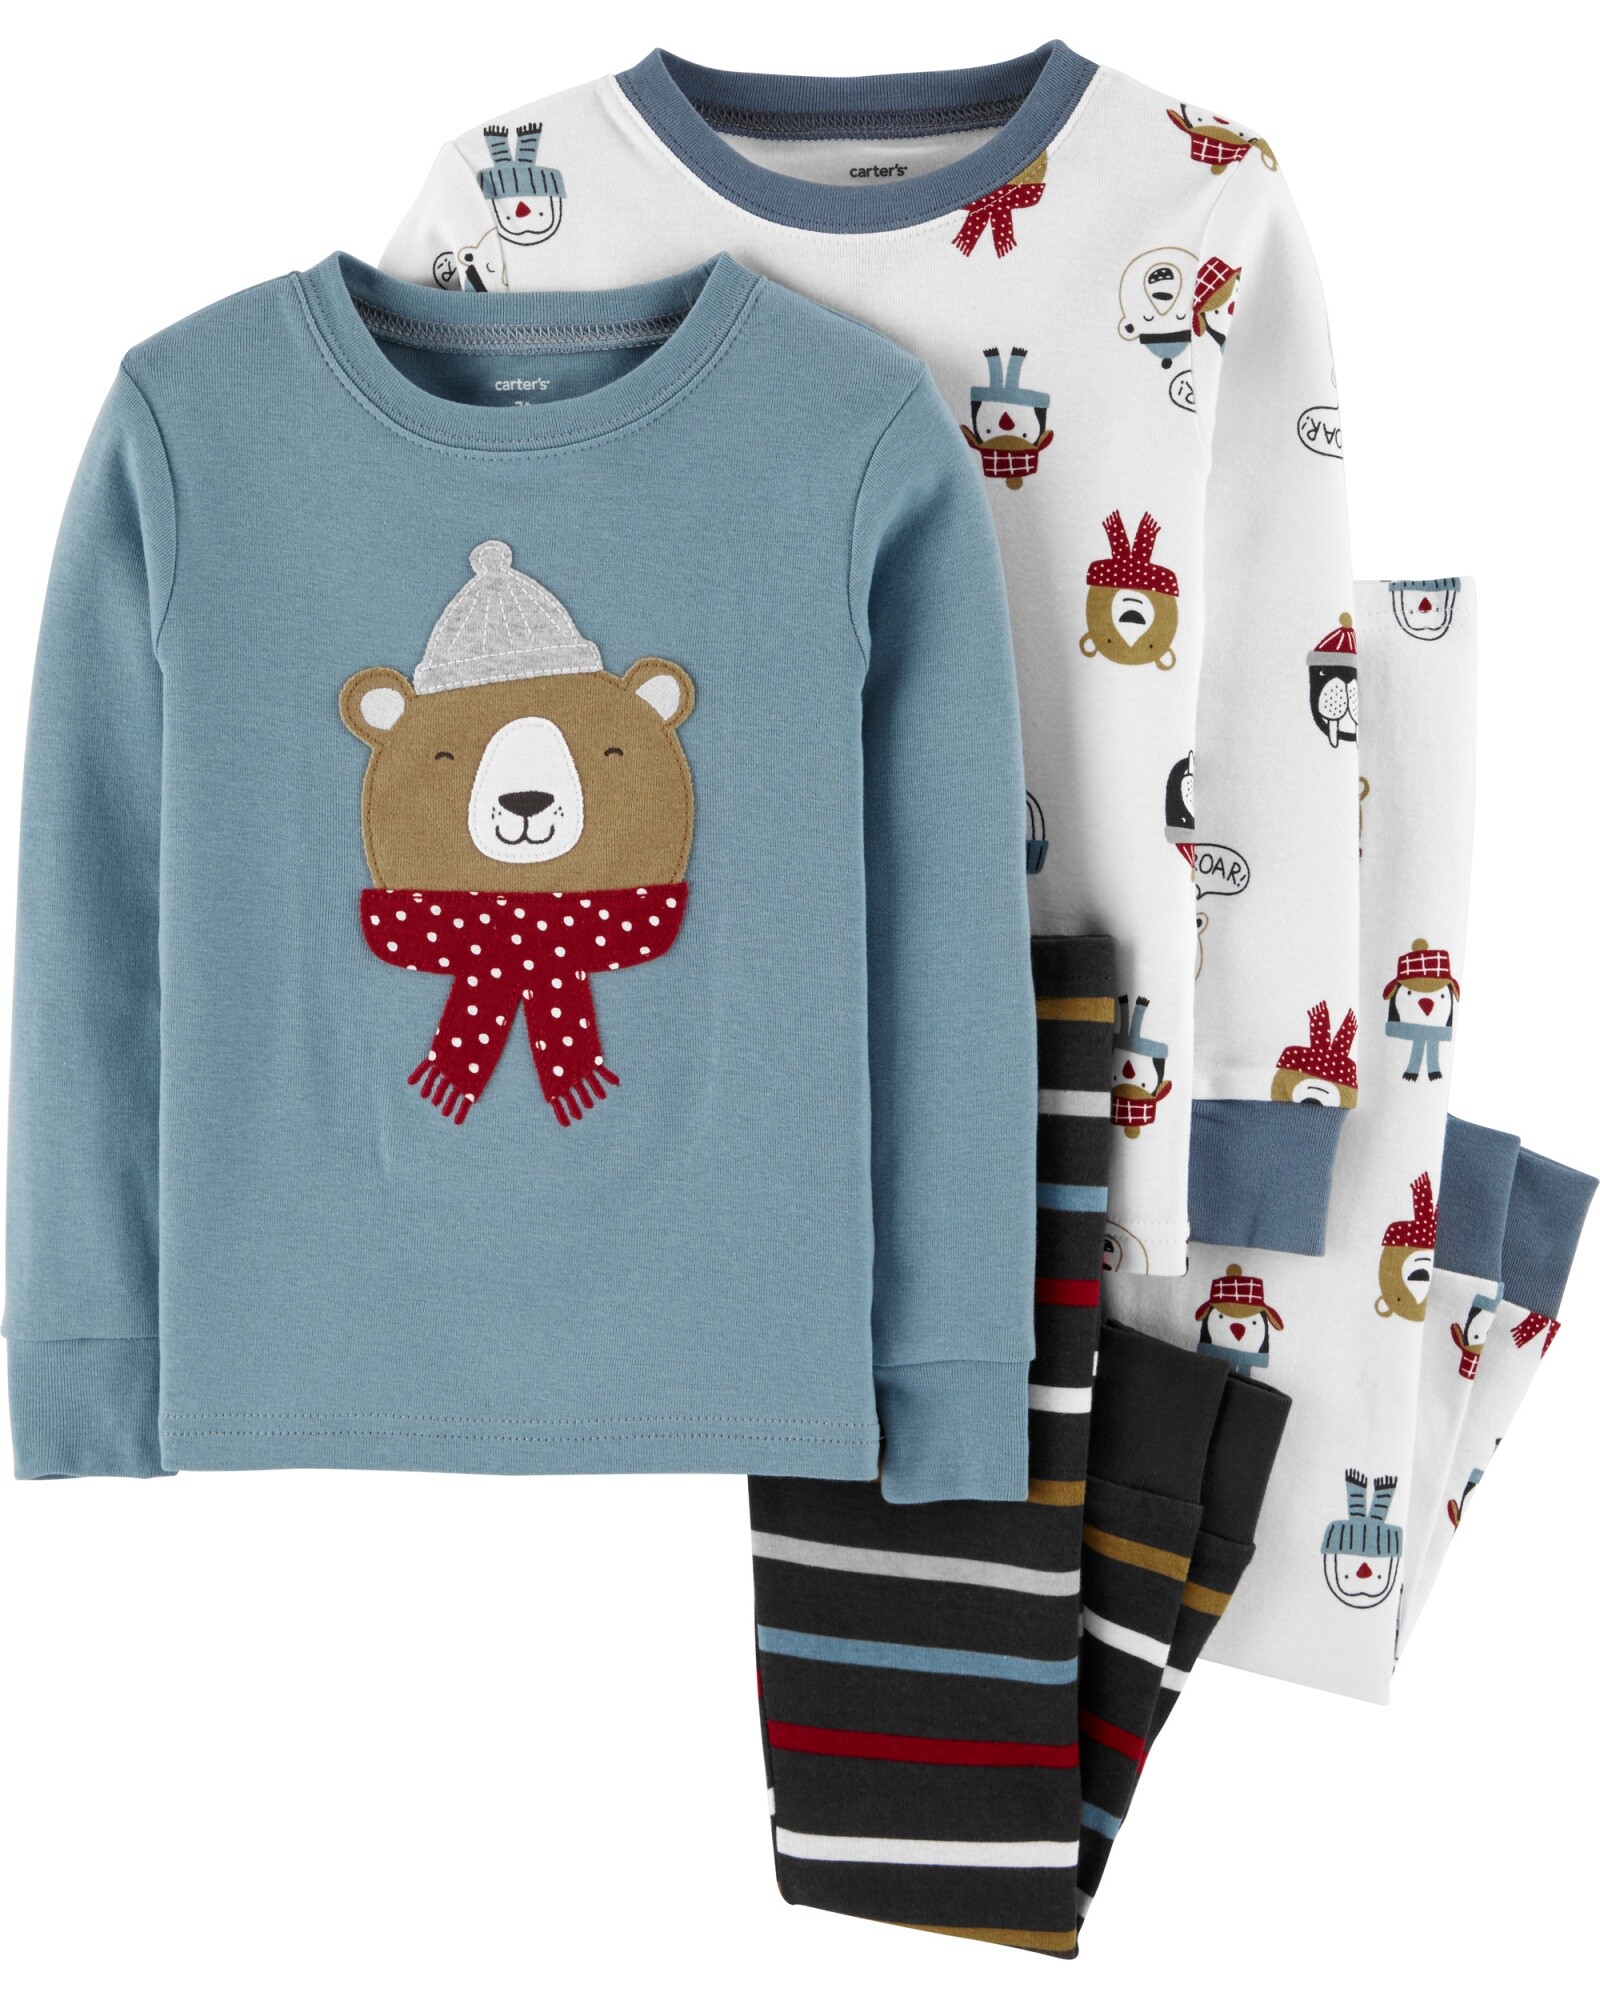 Pijama cuatro piezas de algodón, dos pantalones y dos remeras diseño osos Sin color